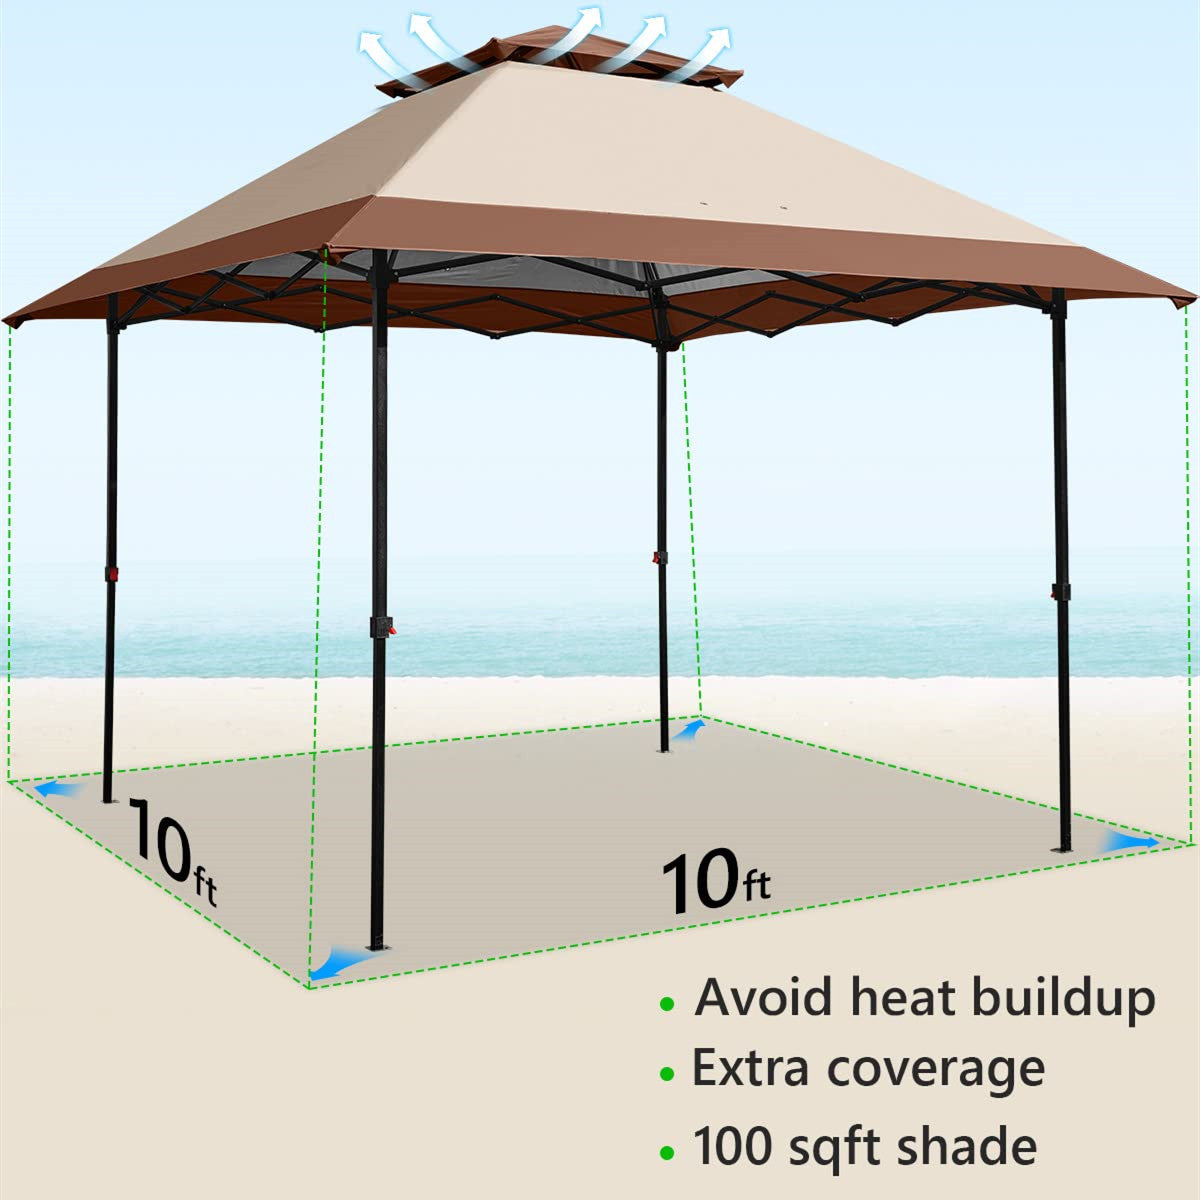 10'x10' Pop up Canopy Tent Size#color_khaki